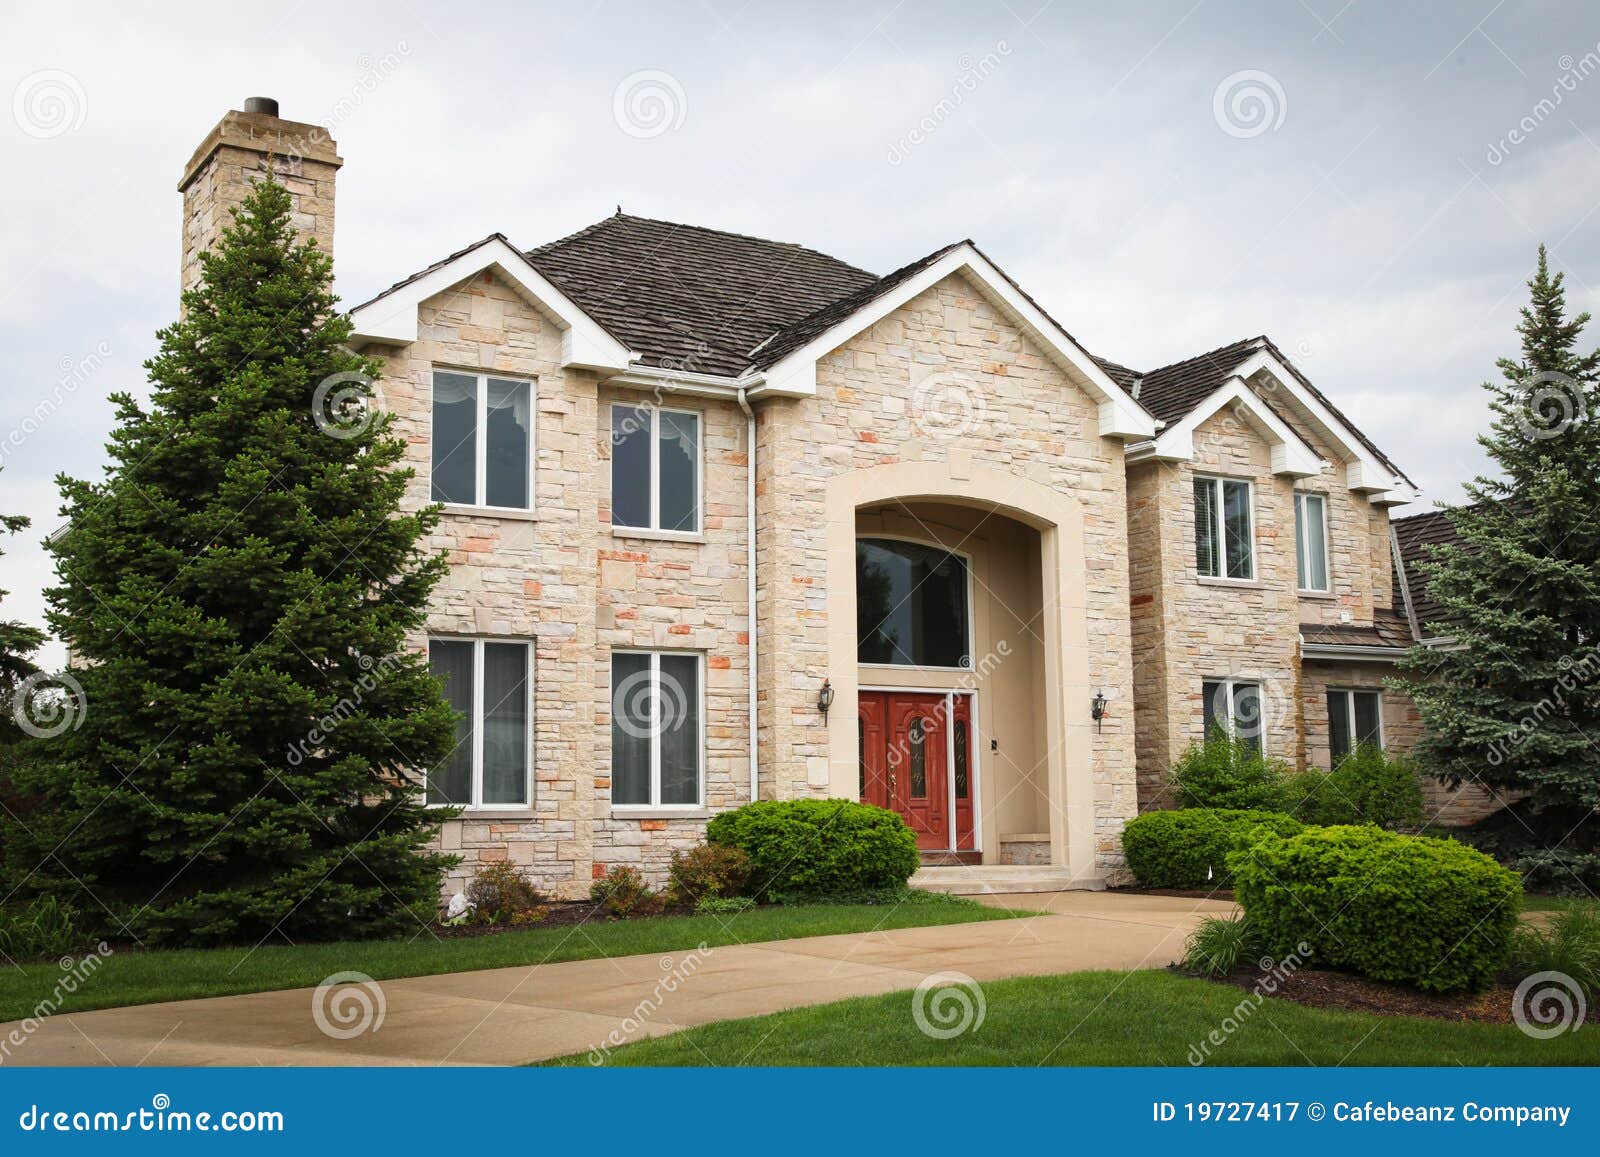 Camera suburbana del mattone. Immagine di una casa unifamiliare con molti finestre e bello abbellimento.